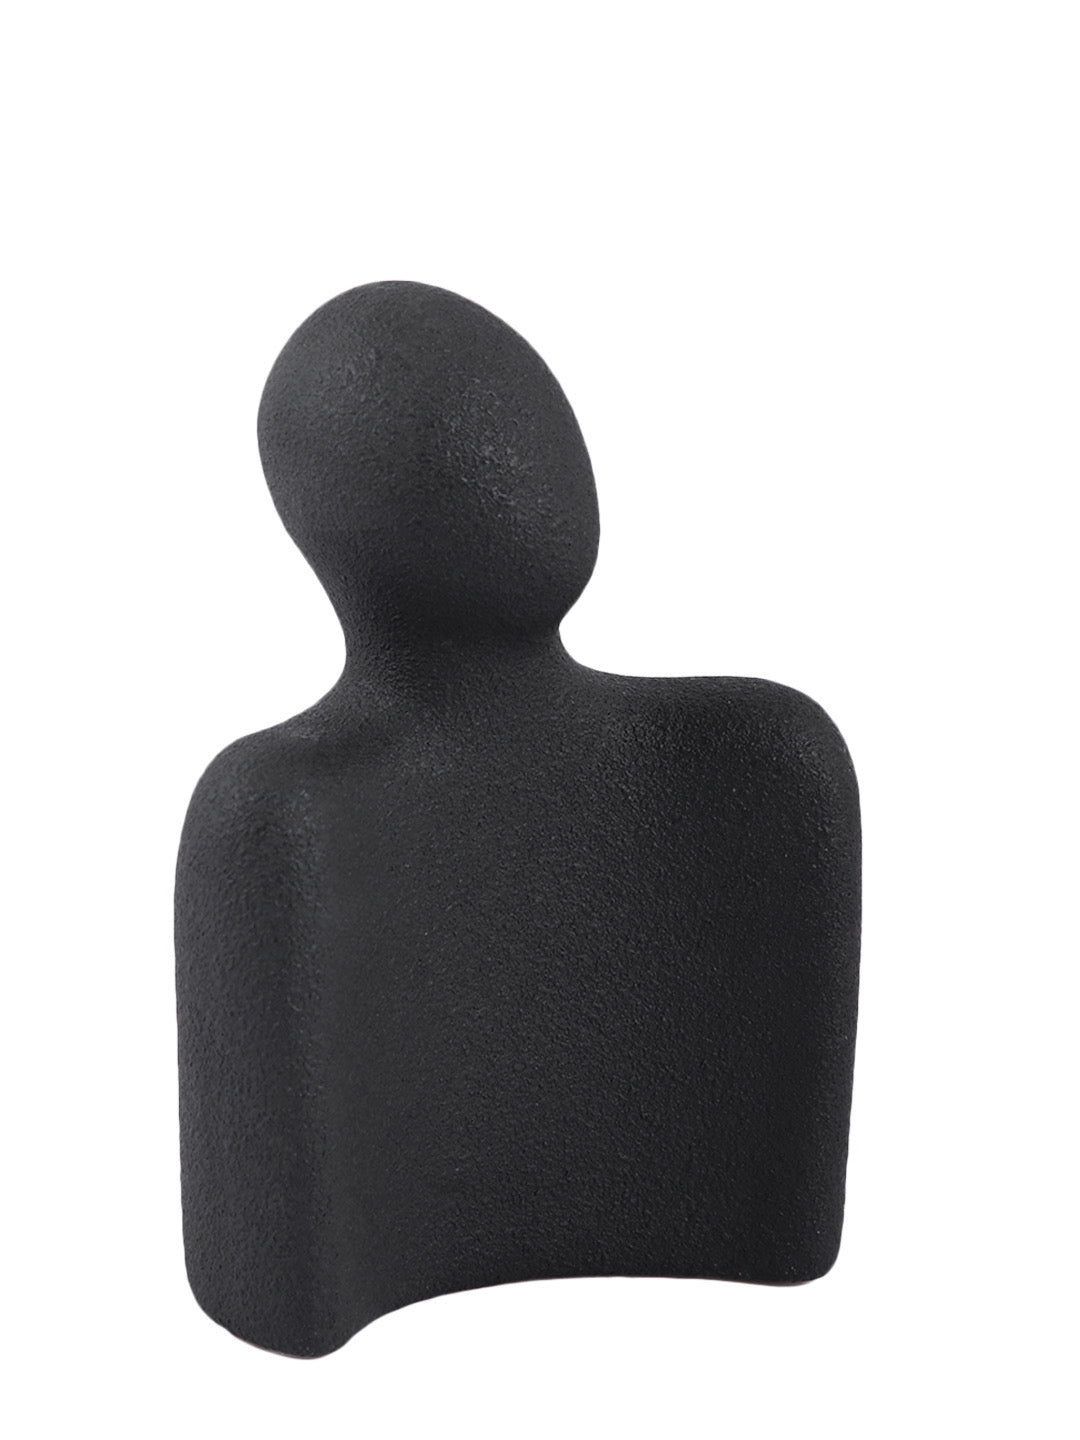 Modern Couple Statues Black Figurine - Default Title (SHOWC22468BL_2)